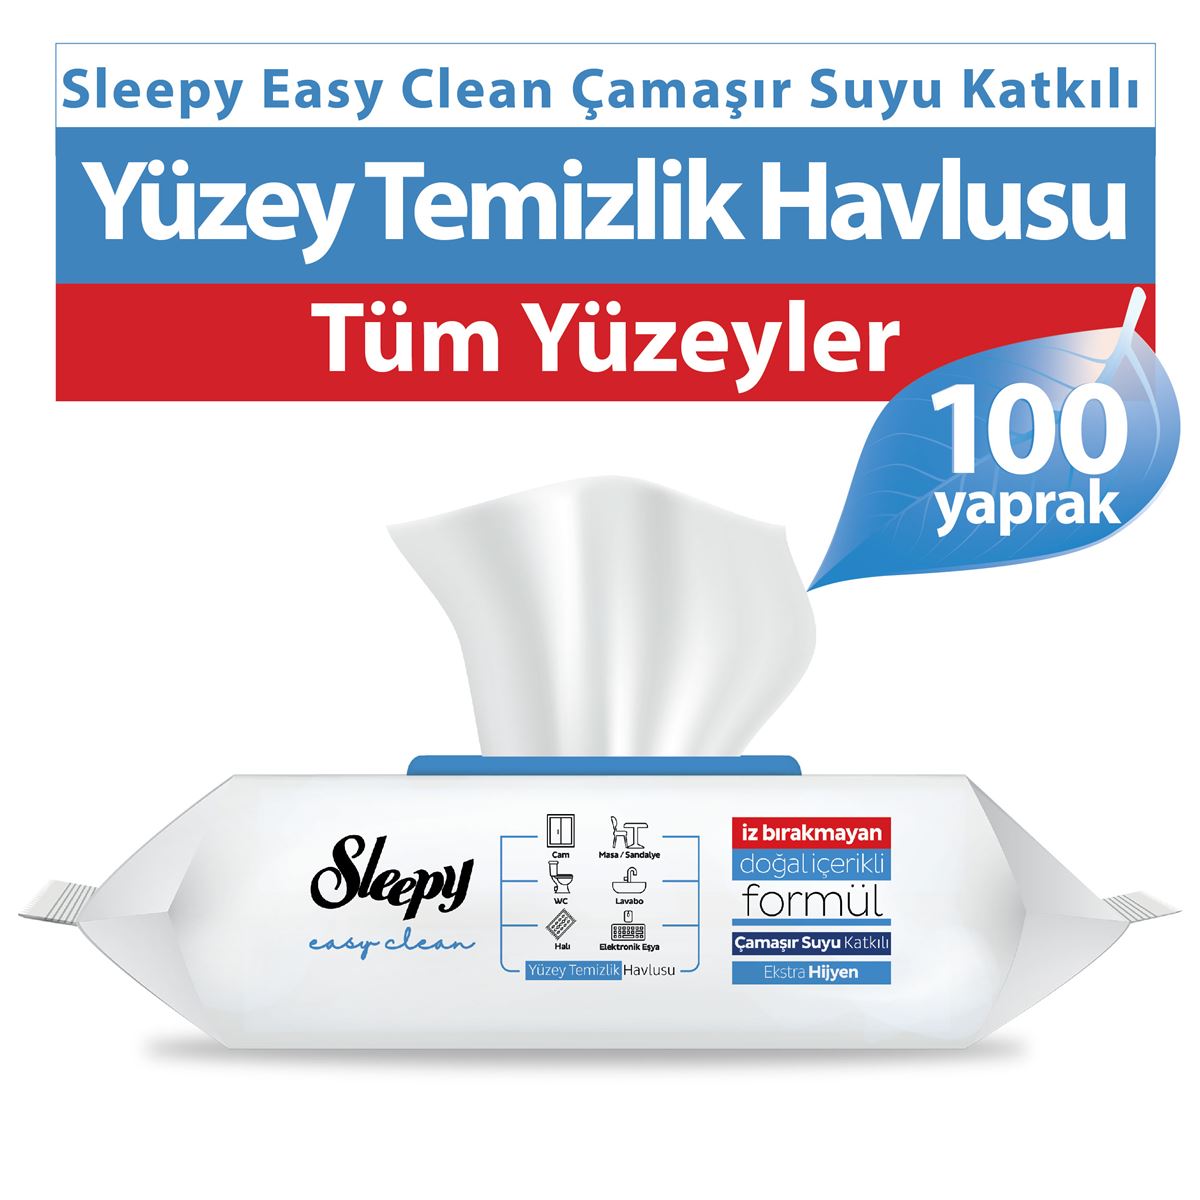 Sleepy Easy Clean Çamaşır Suyu Katkılı Yüzey Temizlik Havlusu 100 Yaprak 7 Paket